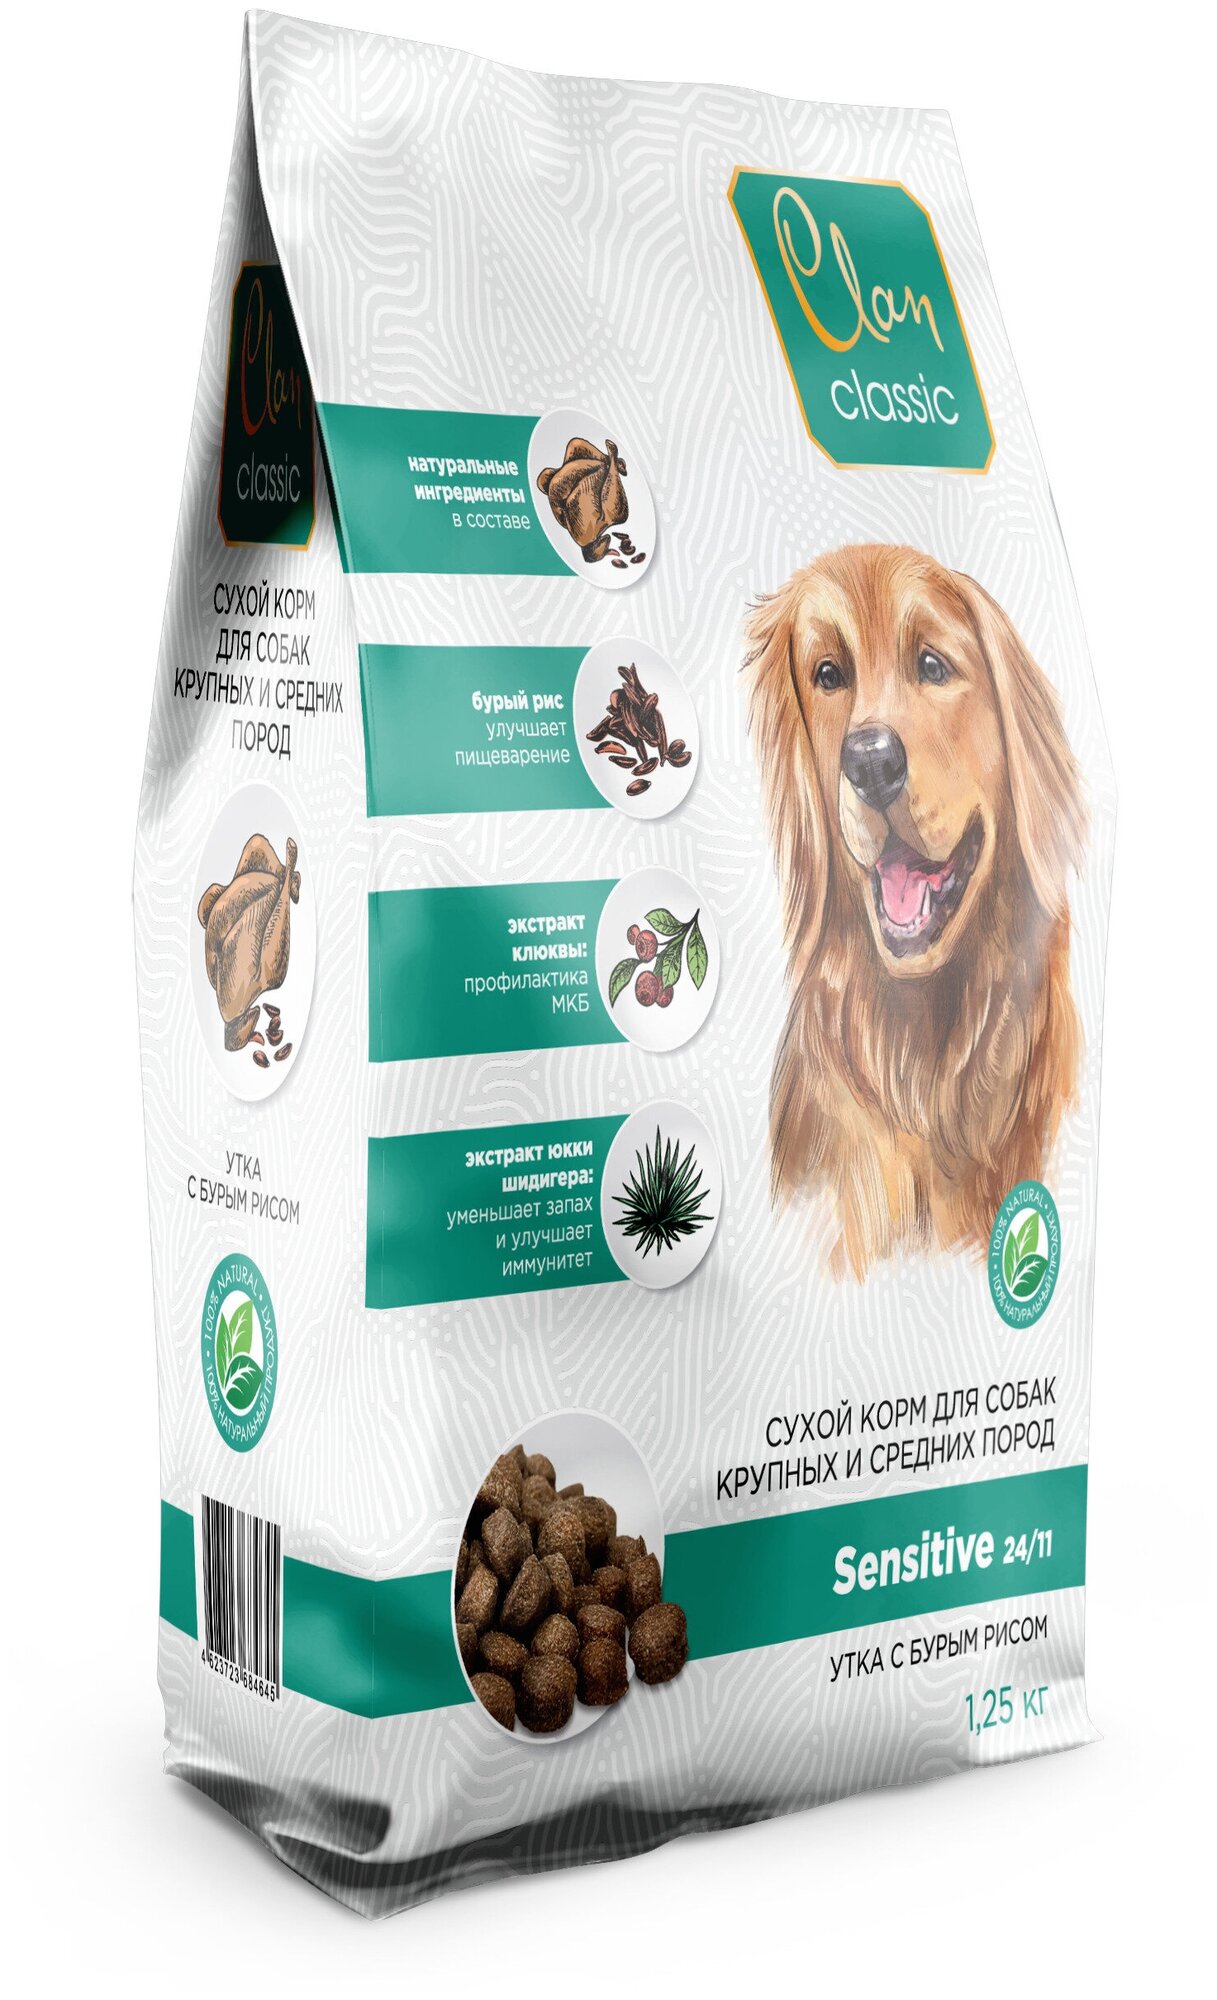 CLAN CLASSIC SENSITIVE Сухой корм для собак средних и крупных пород (утка С бурым рисом), 1,25 кг